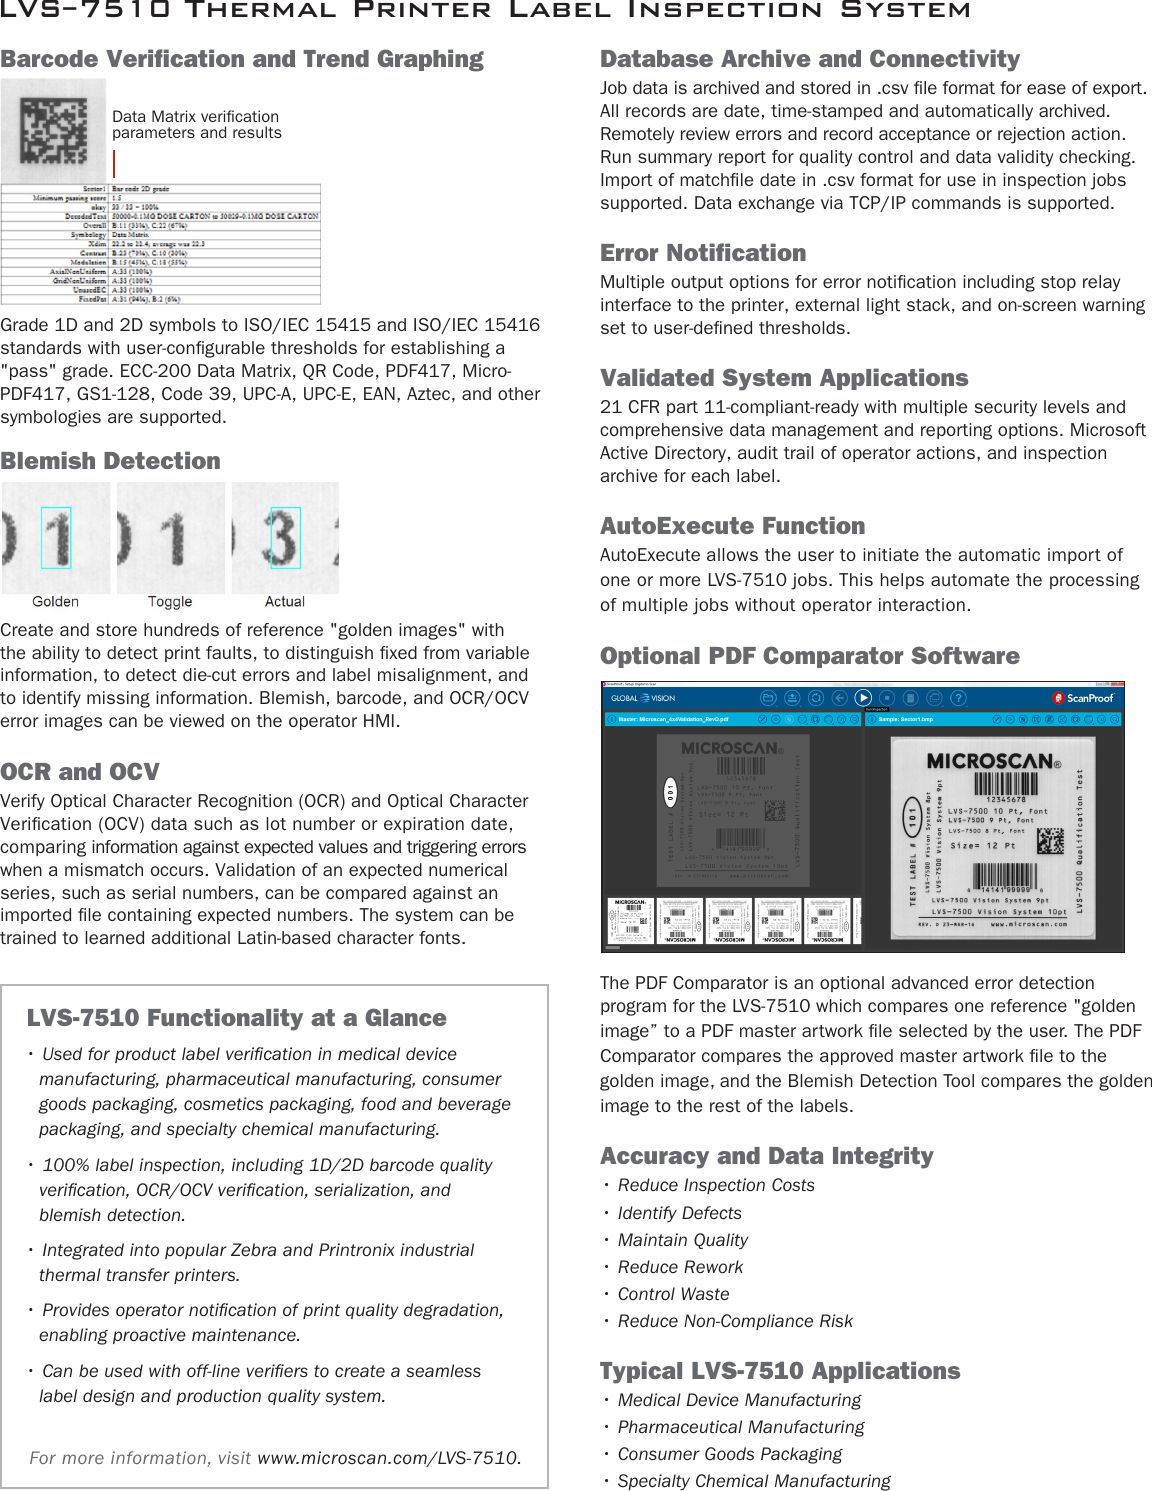 Page 2 of 4 - LVS-7510 Thermal Printer Label Inspection System  Lvs-7510-brochure.en